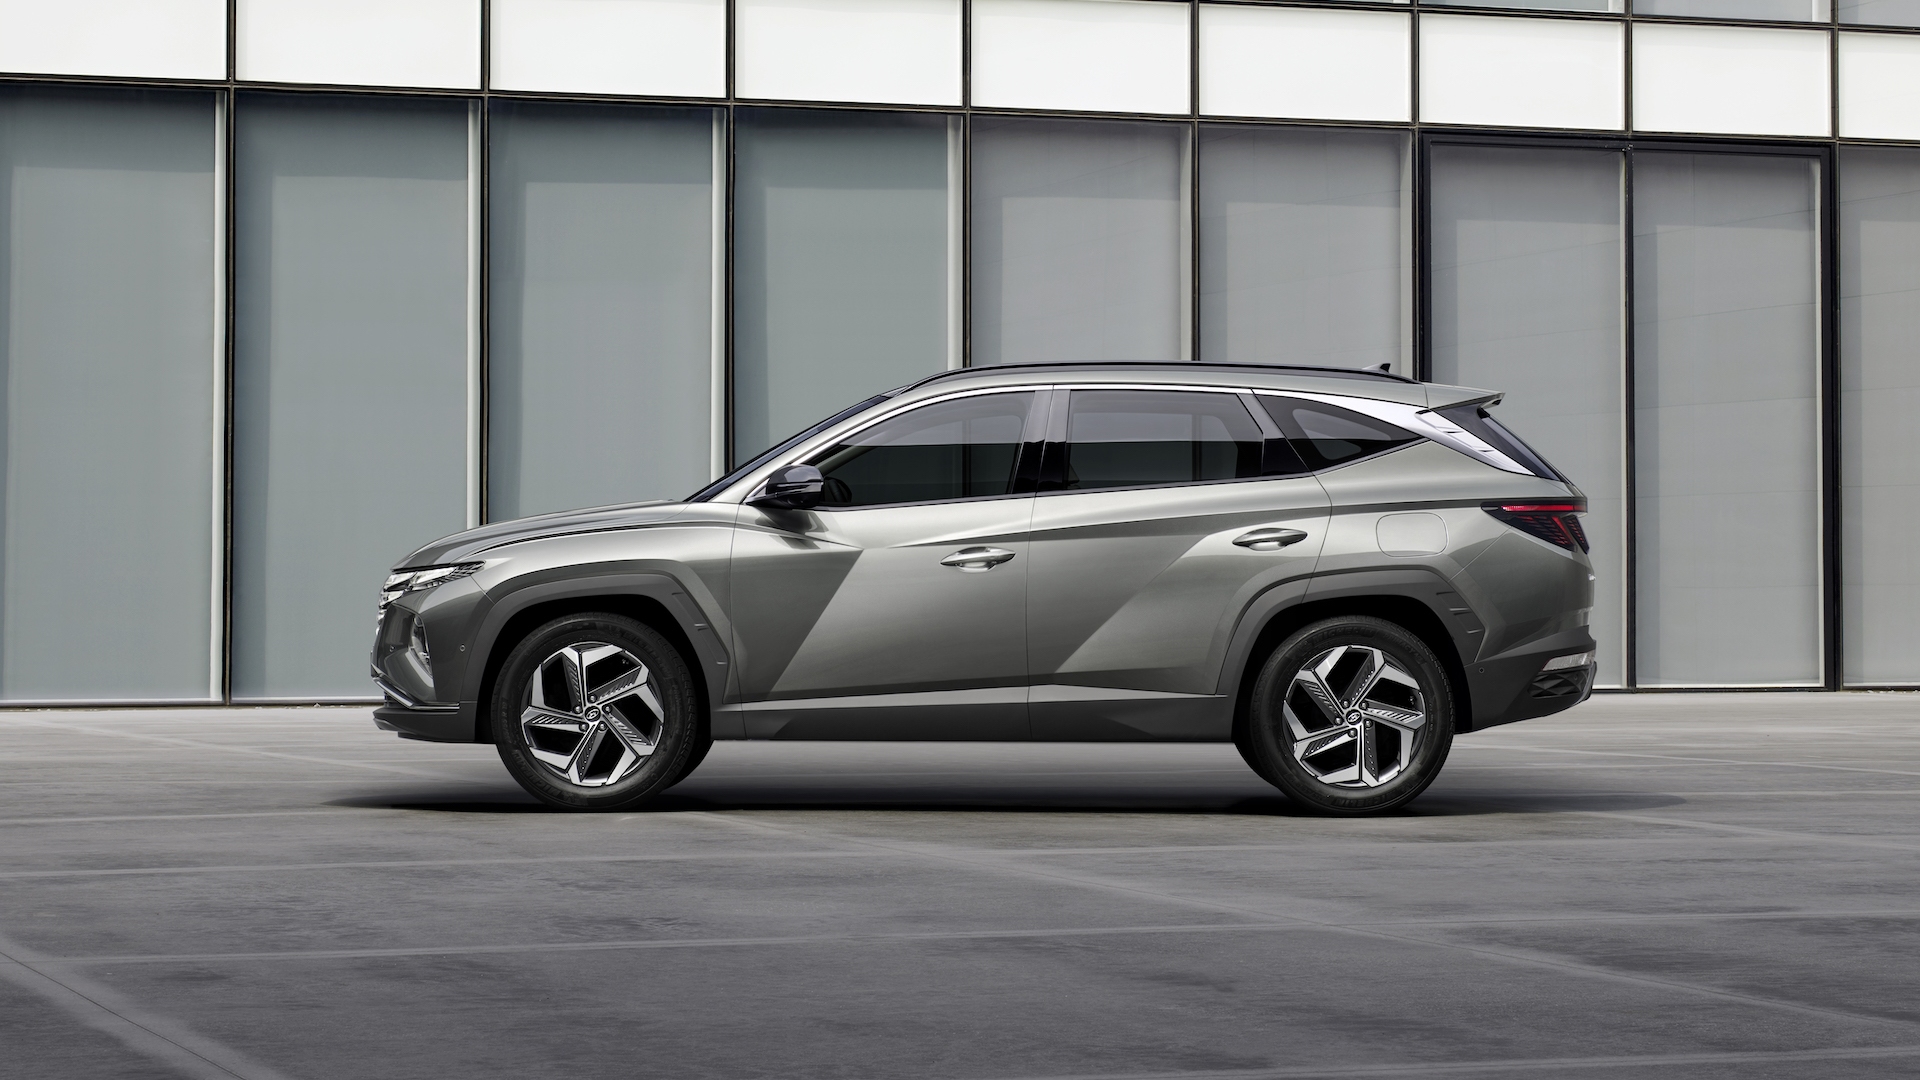 Thiết kế của Hyundai Tucson 2022 mang đậm phong cách Đức